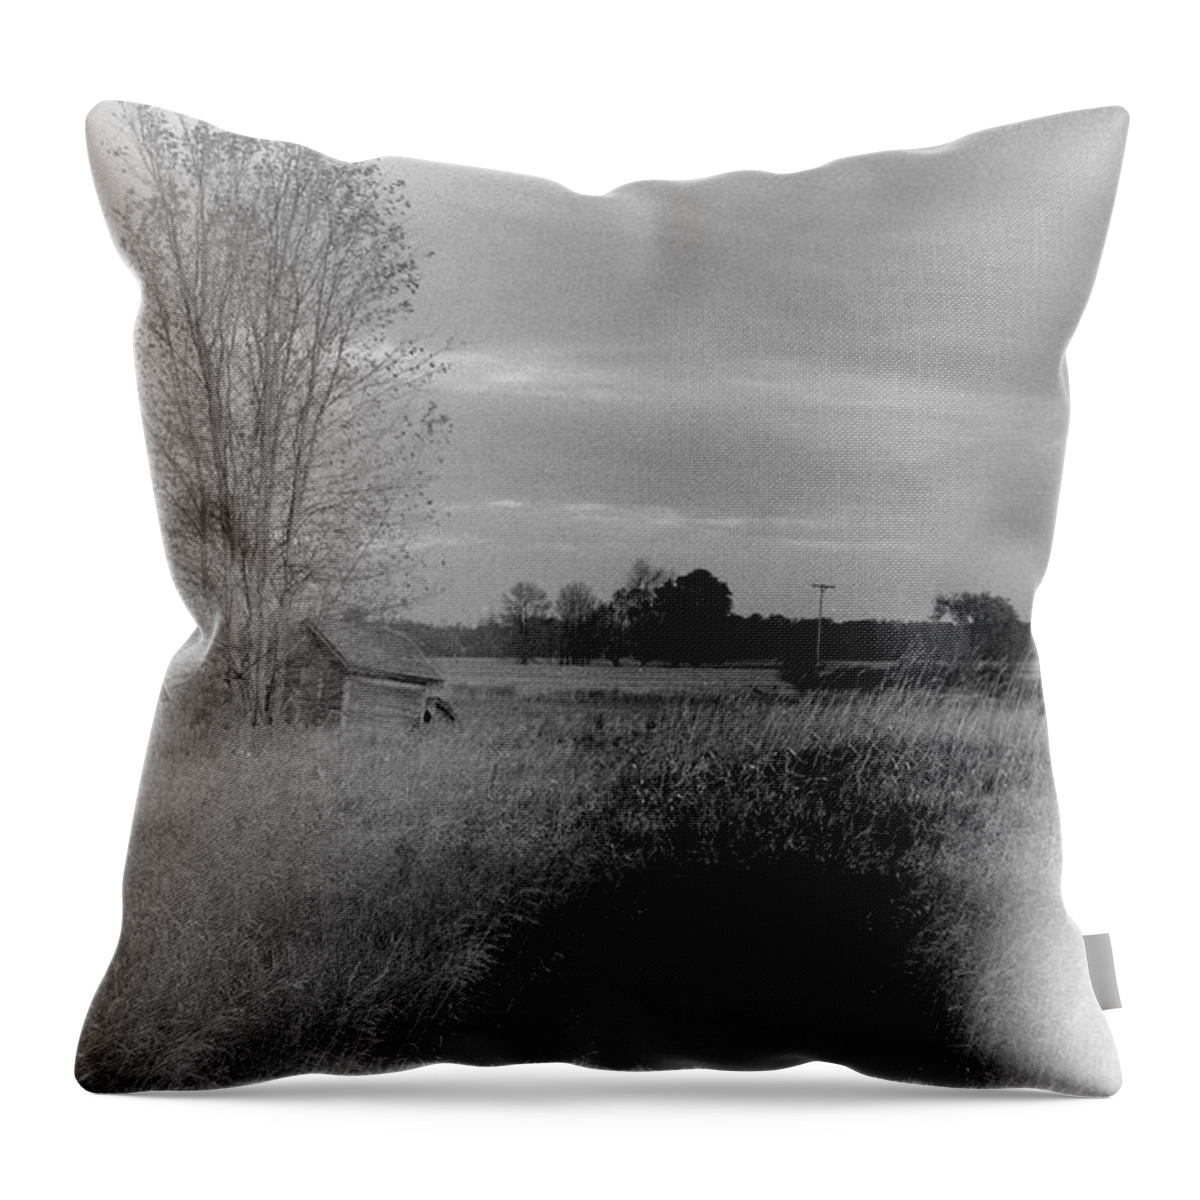 B&w Throw Pillow featuring the photograph Maple Ridge Rd farm by Daniel Thompson